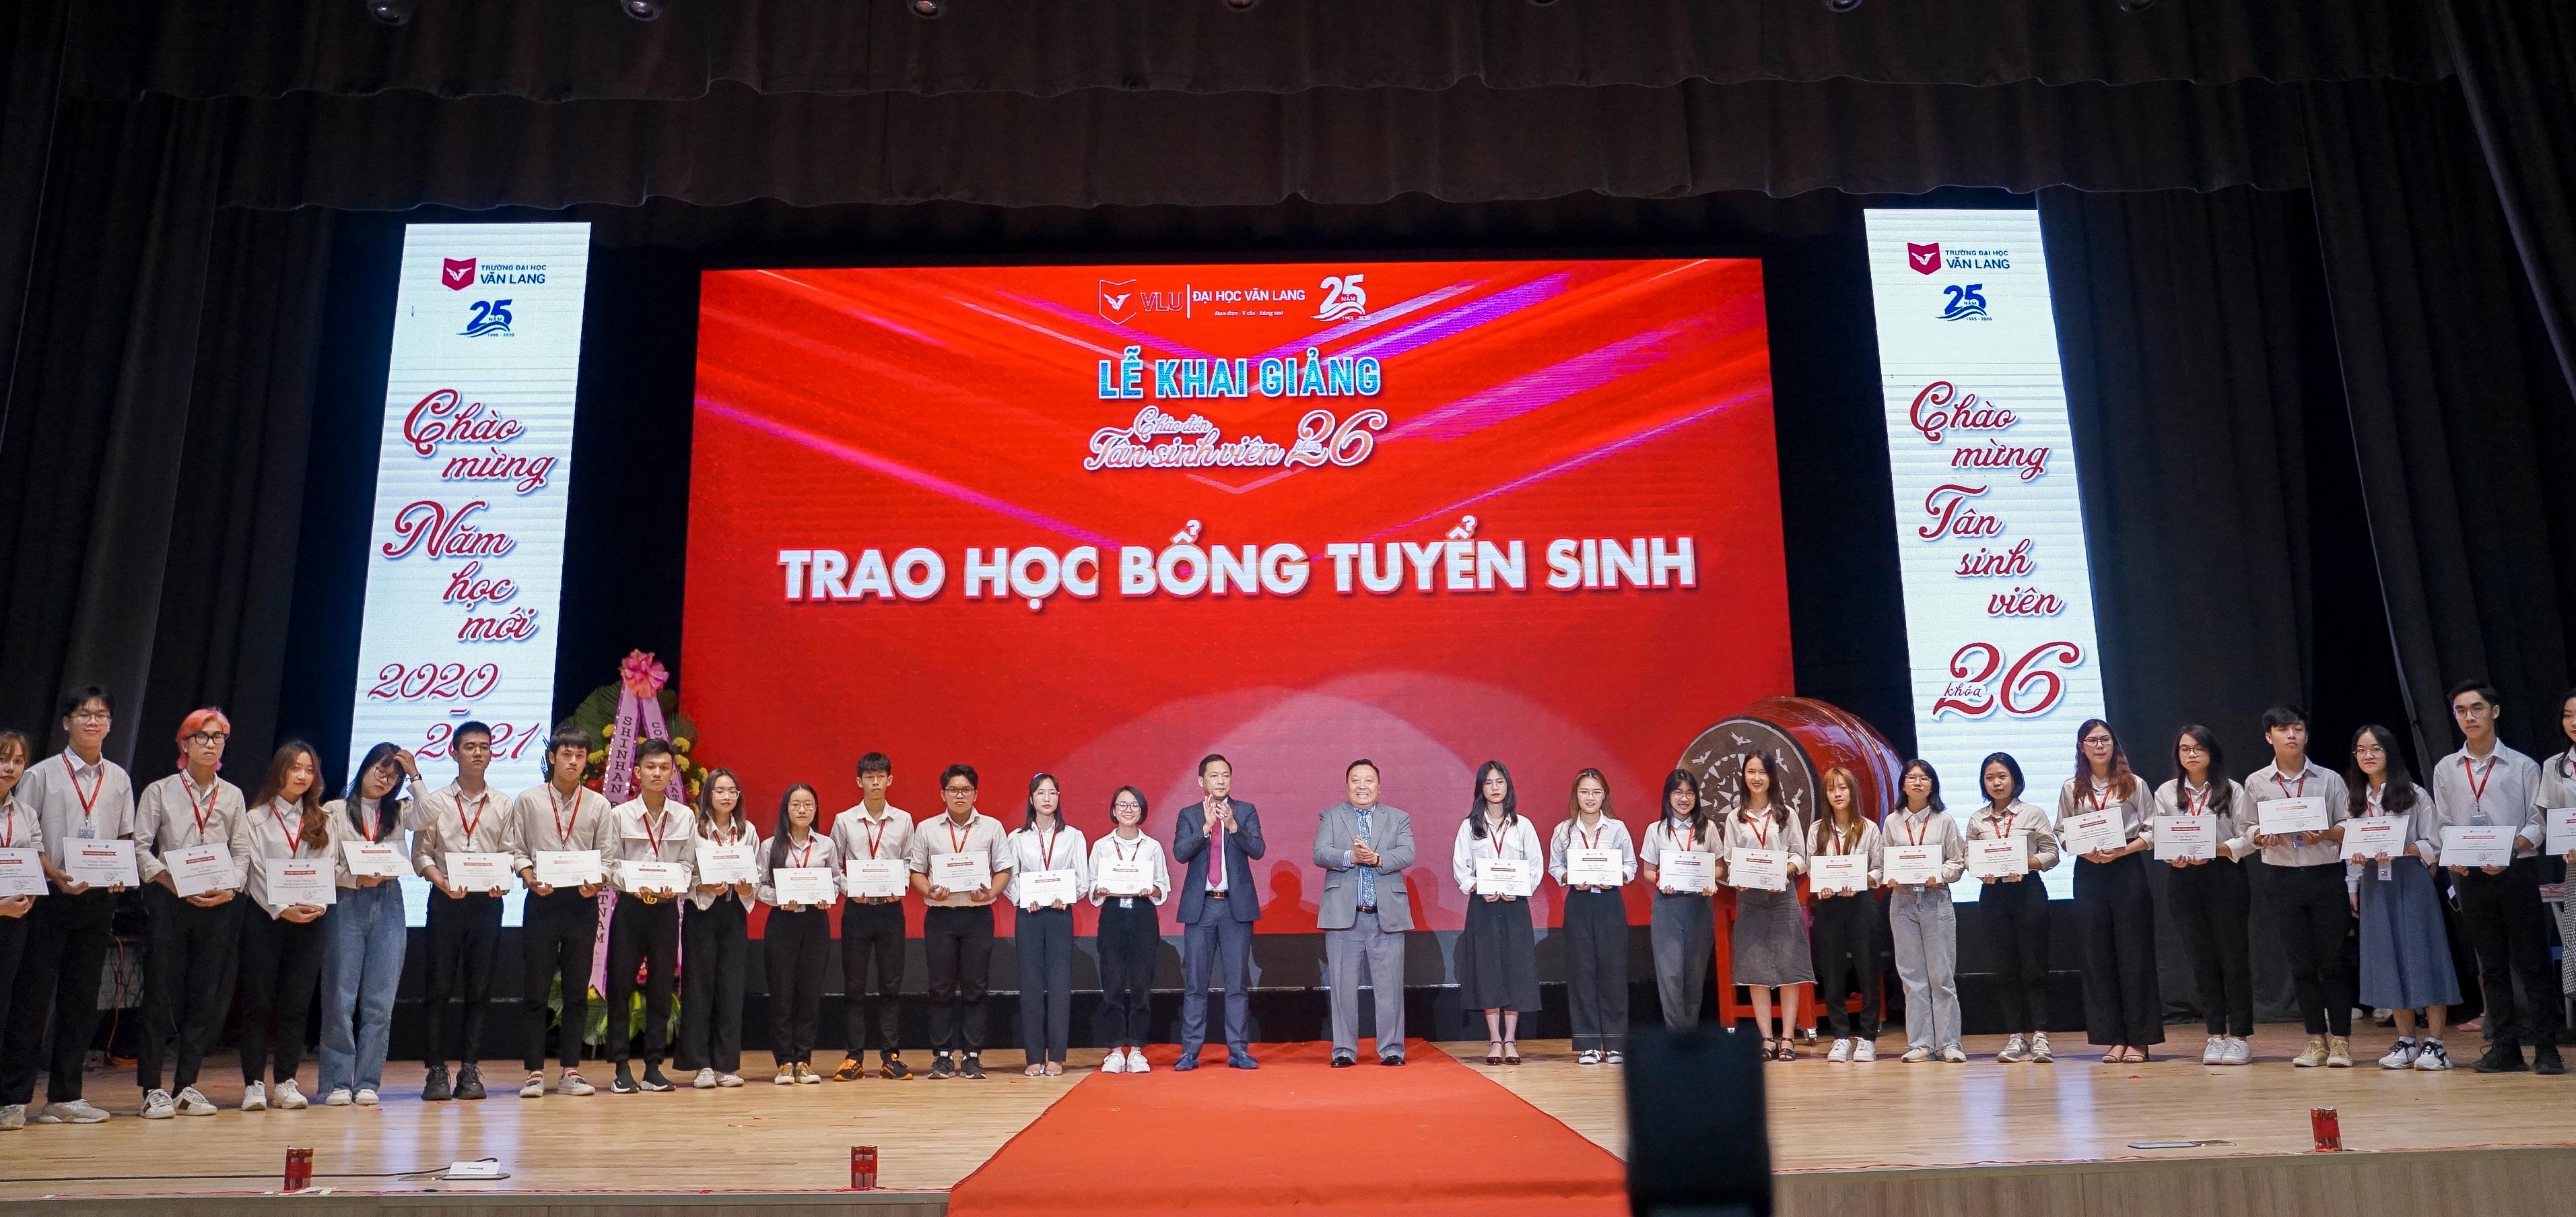 Đại học Văn Lang đã trao 10 tỷ đồng học bổng cho tân sinh viên khóa 26 trong Lễ khai giảng năm 2020 1